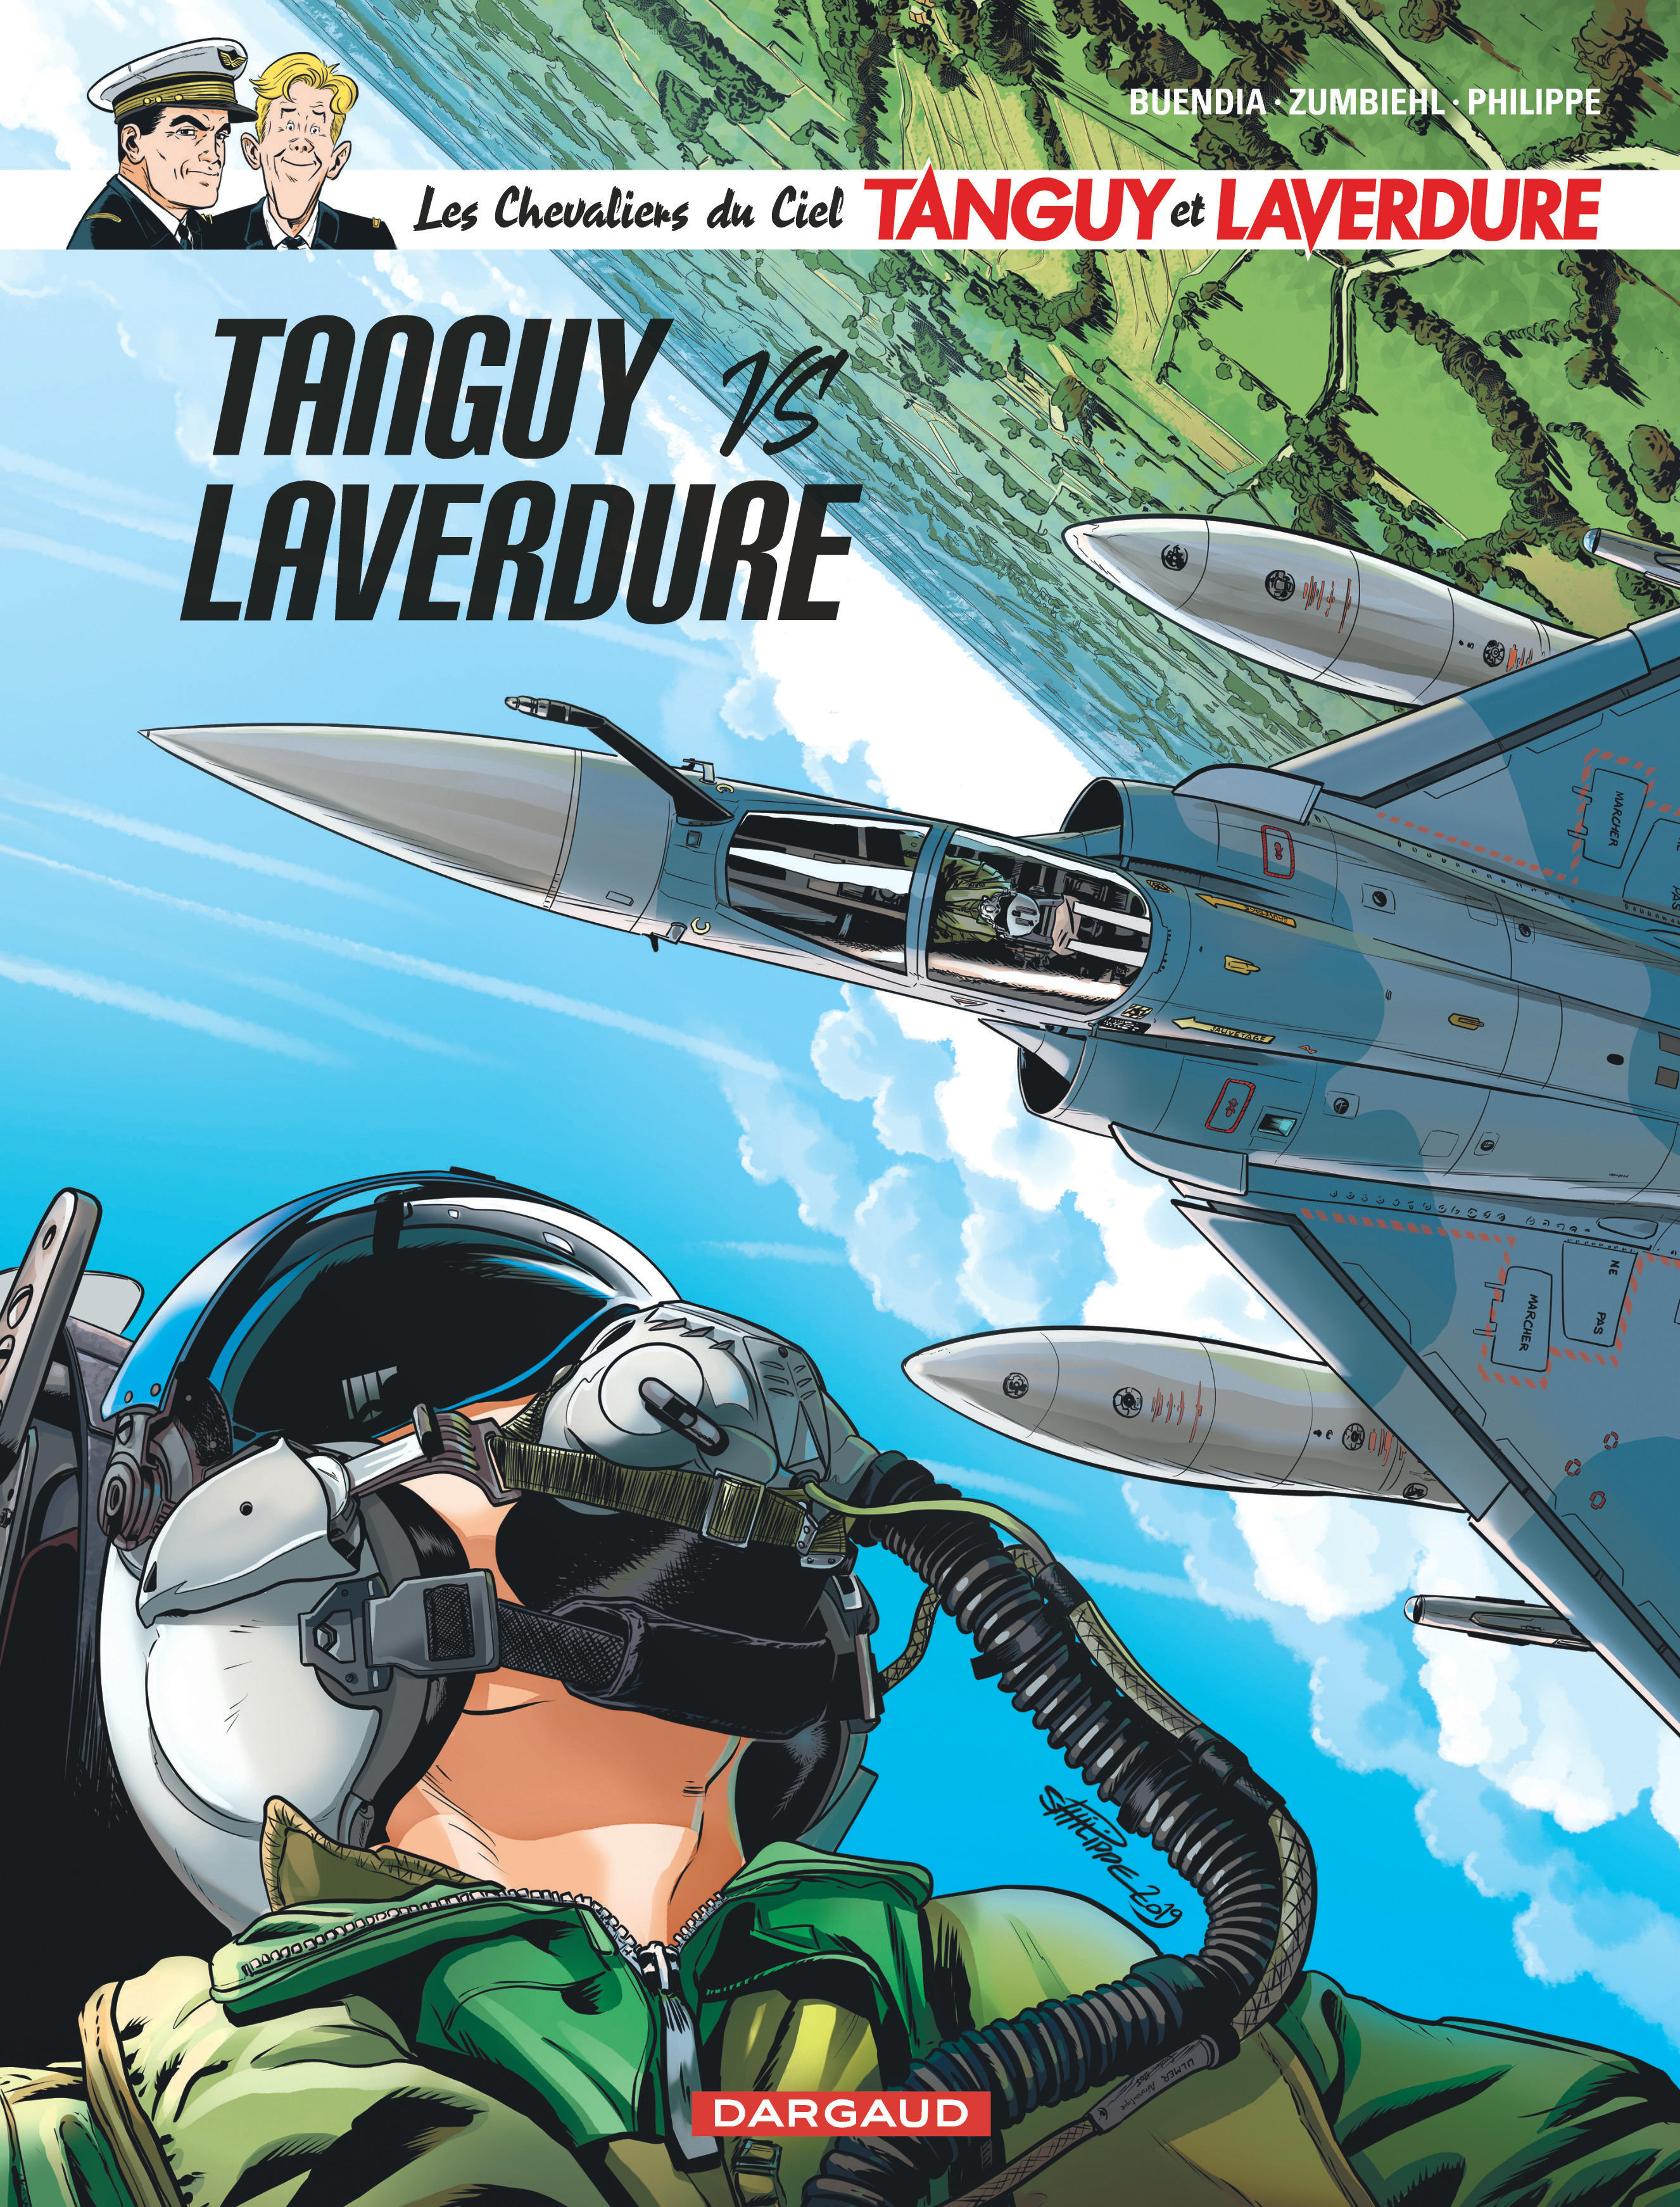 Les Chevaliers du ciel Tanguy et Laverdure – Tome 9 – Tanguy VS Laverdure - couv